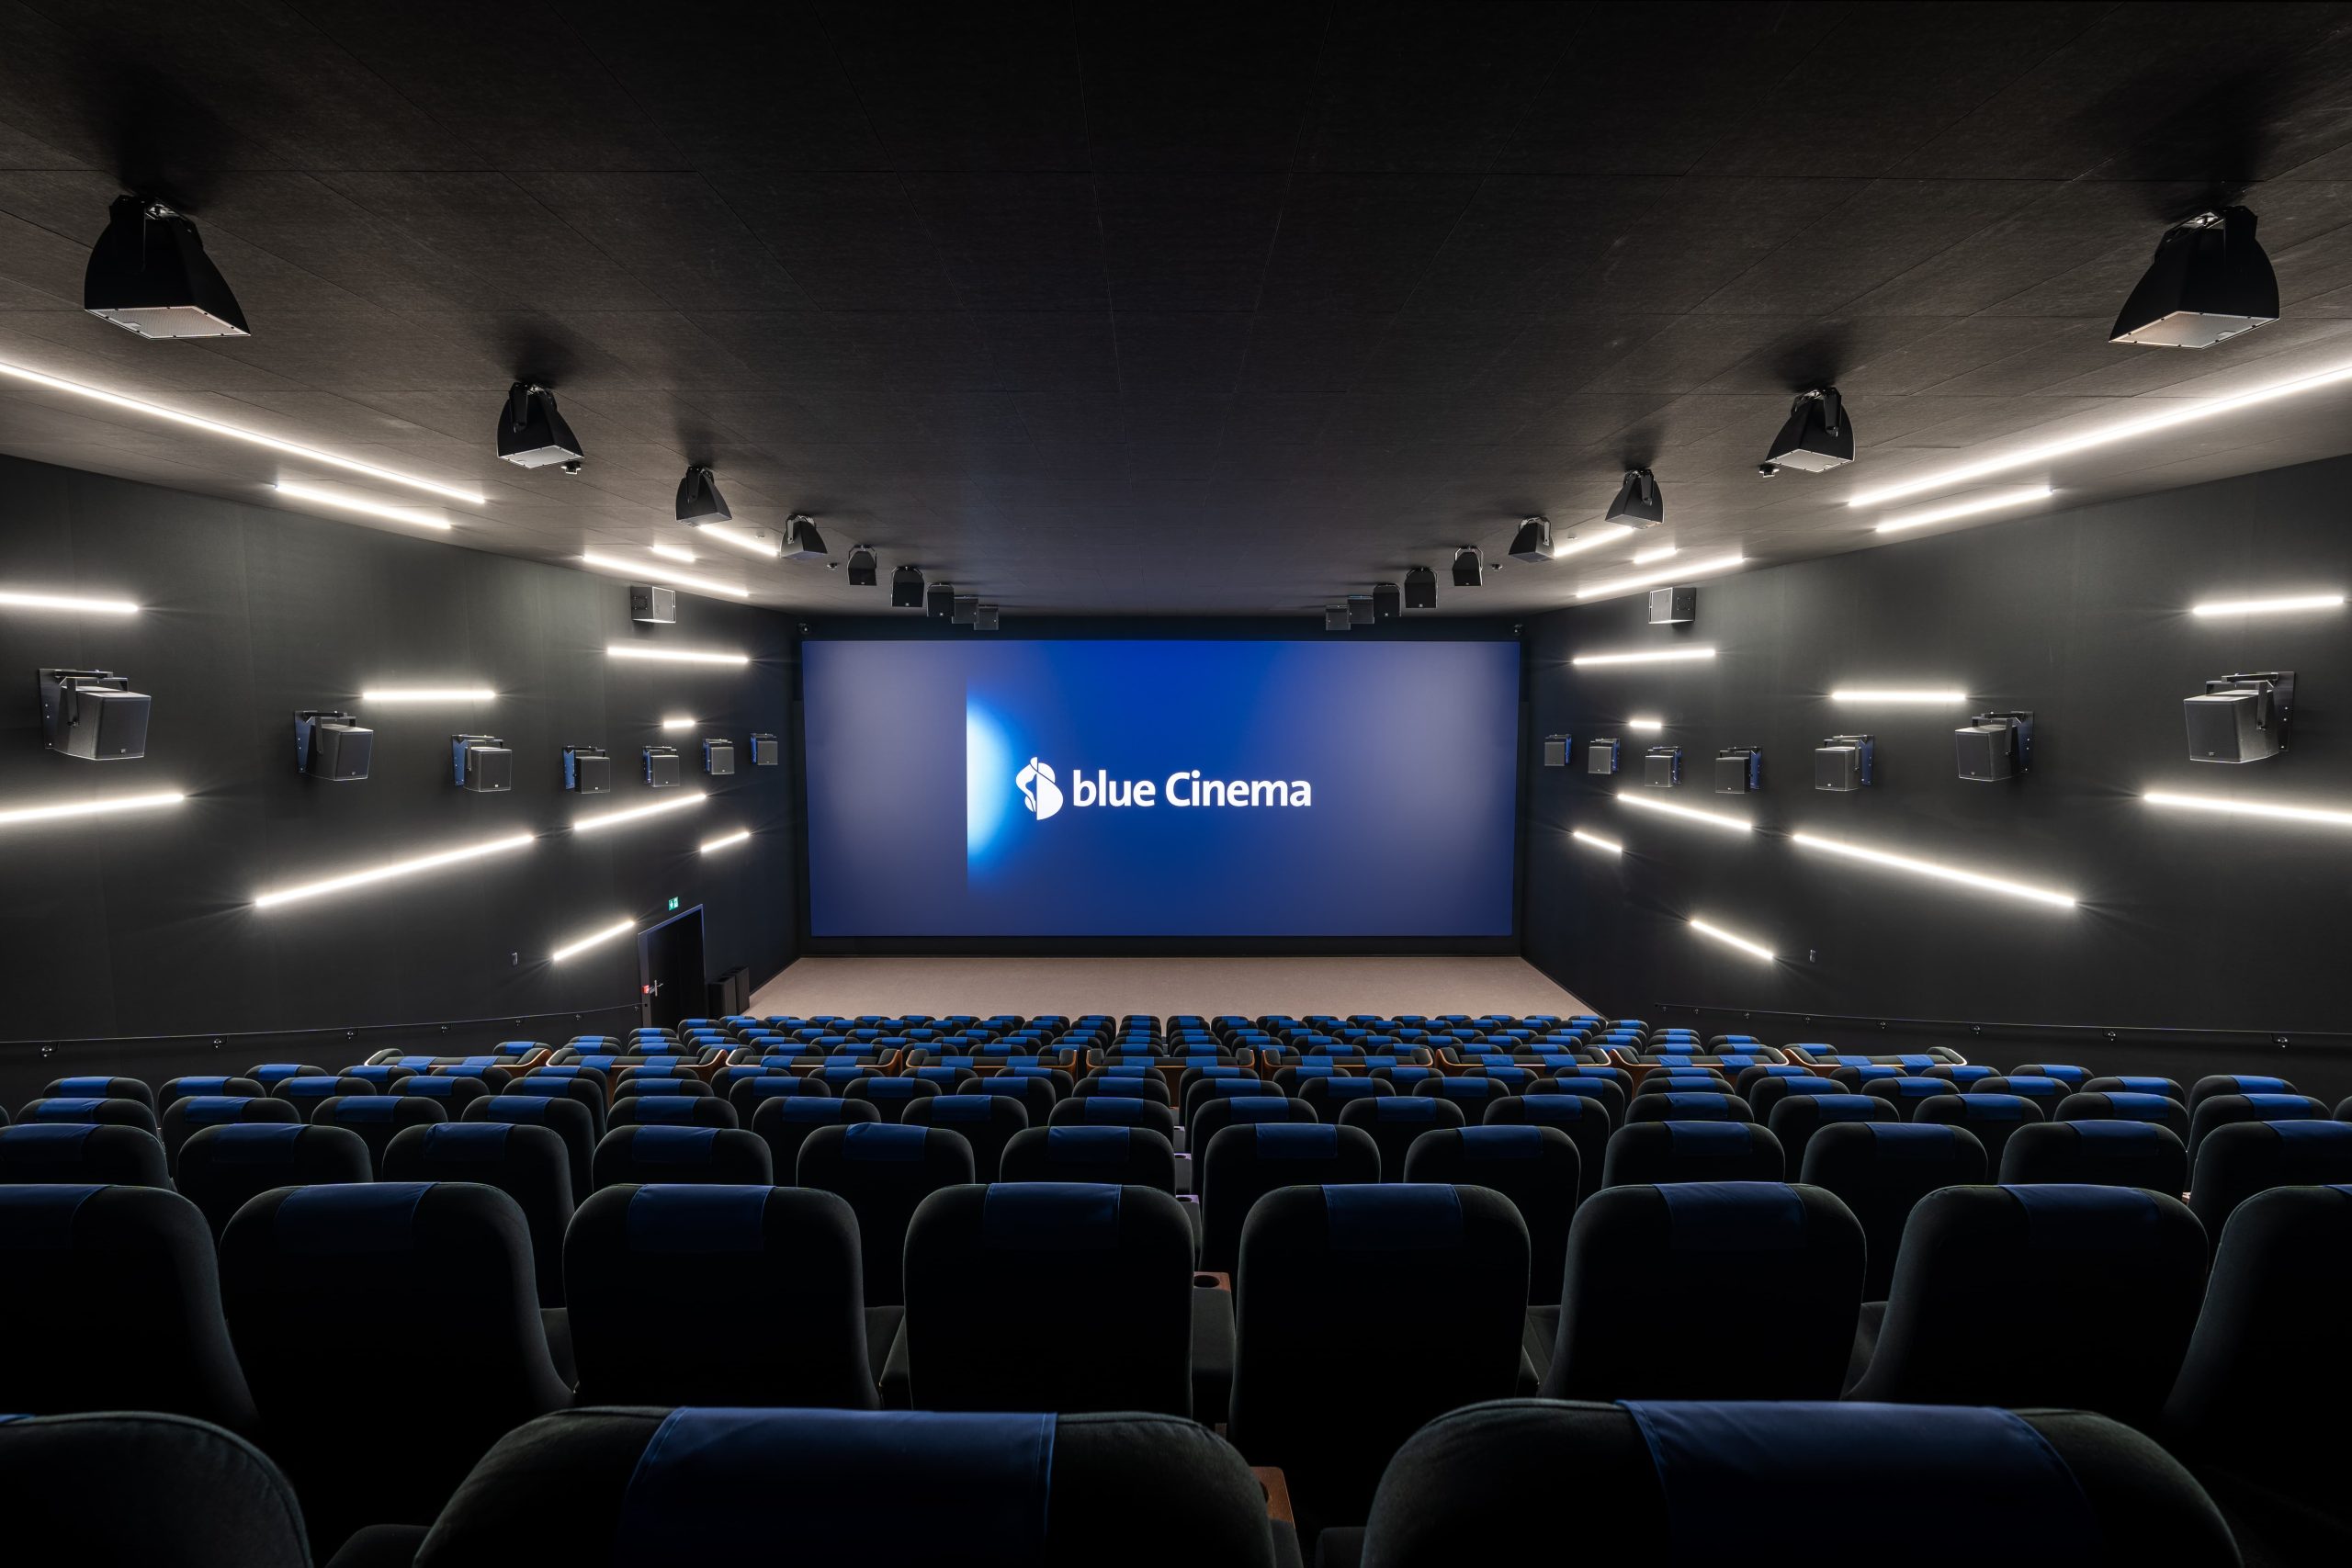 Exklusive Kinovorstellung im blue Cinema für private Events und geschäftliche Anlässe.